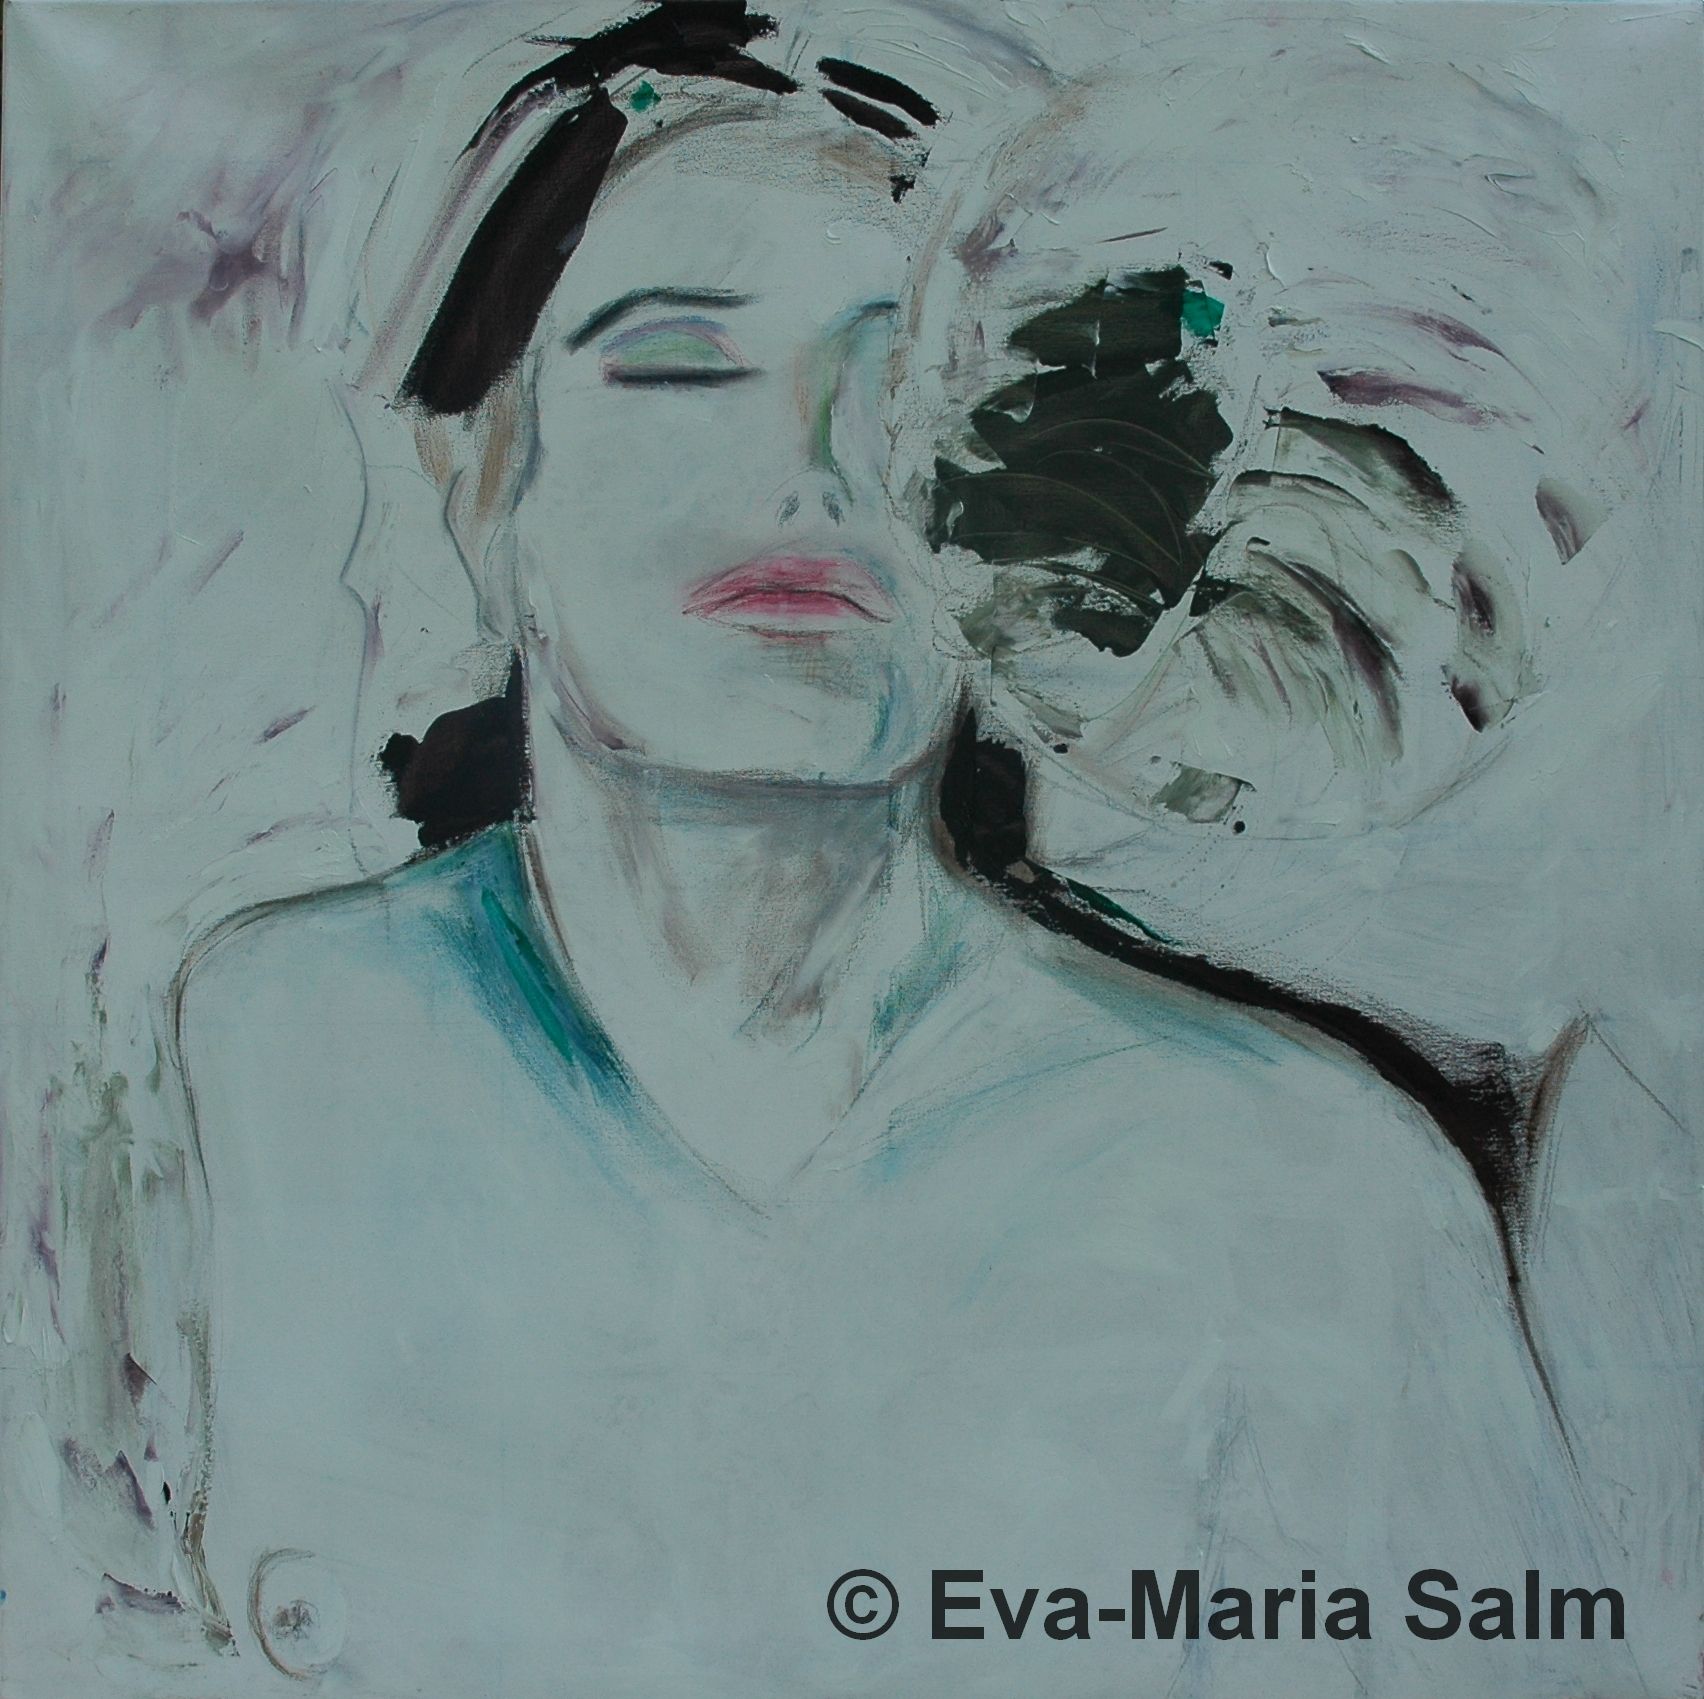 Eva-Maria Salm | Akt XXVII turnaround | 2008 | Ölkreide und Öl auf Leinwand | 100 x 100 cm